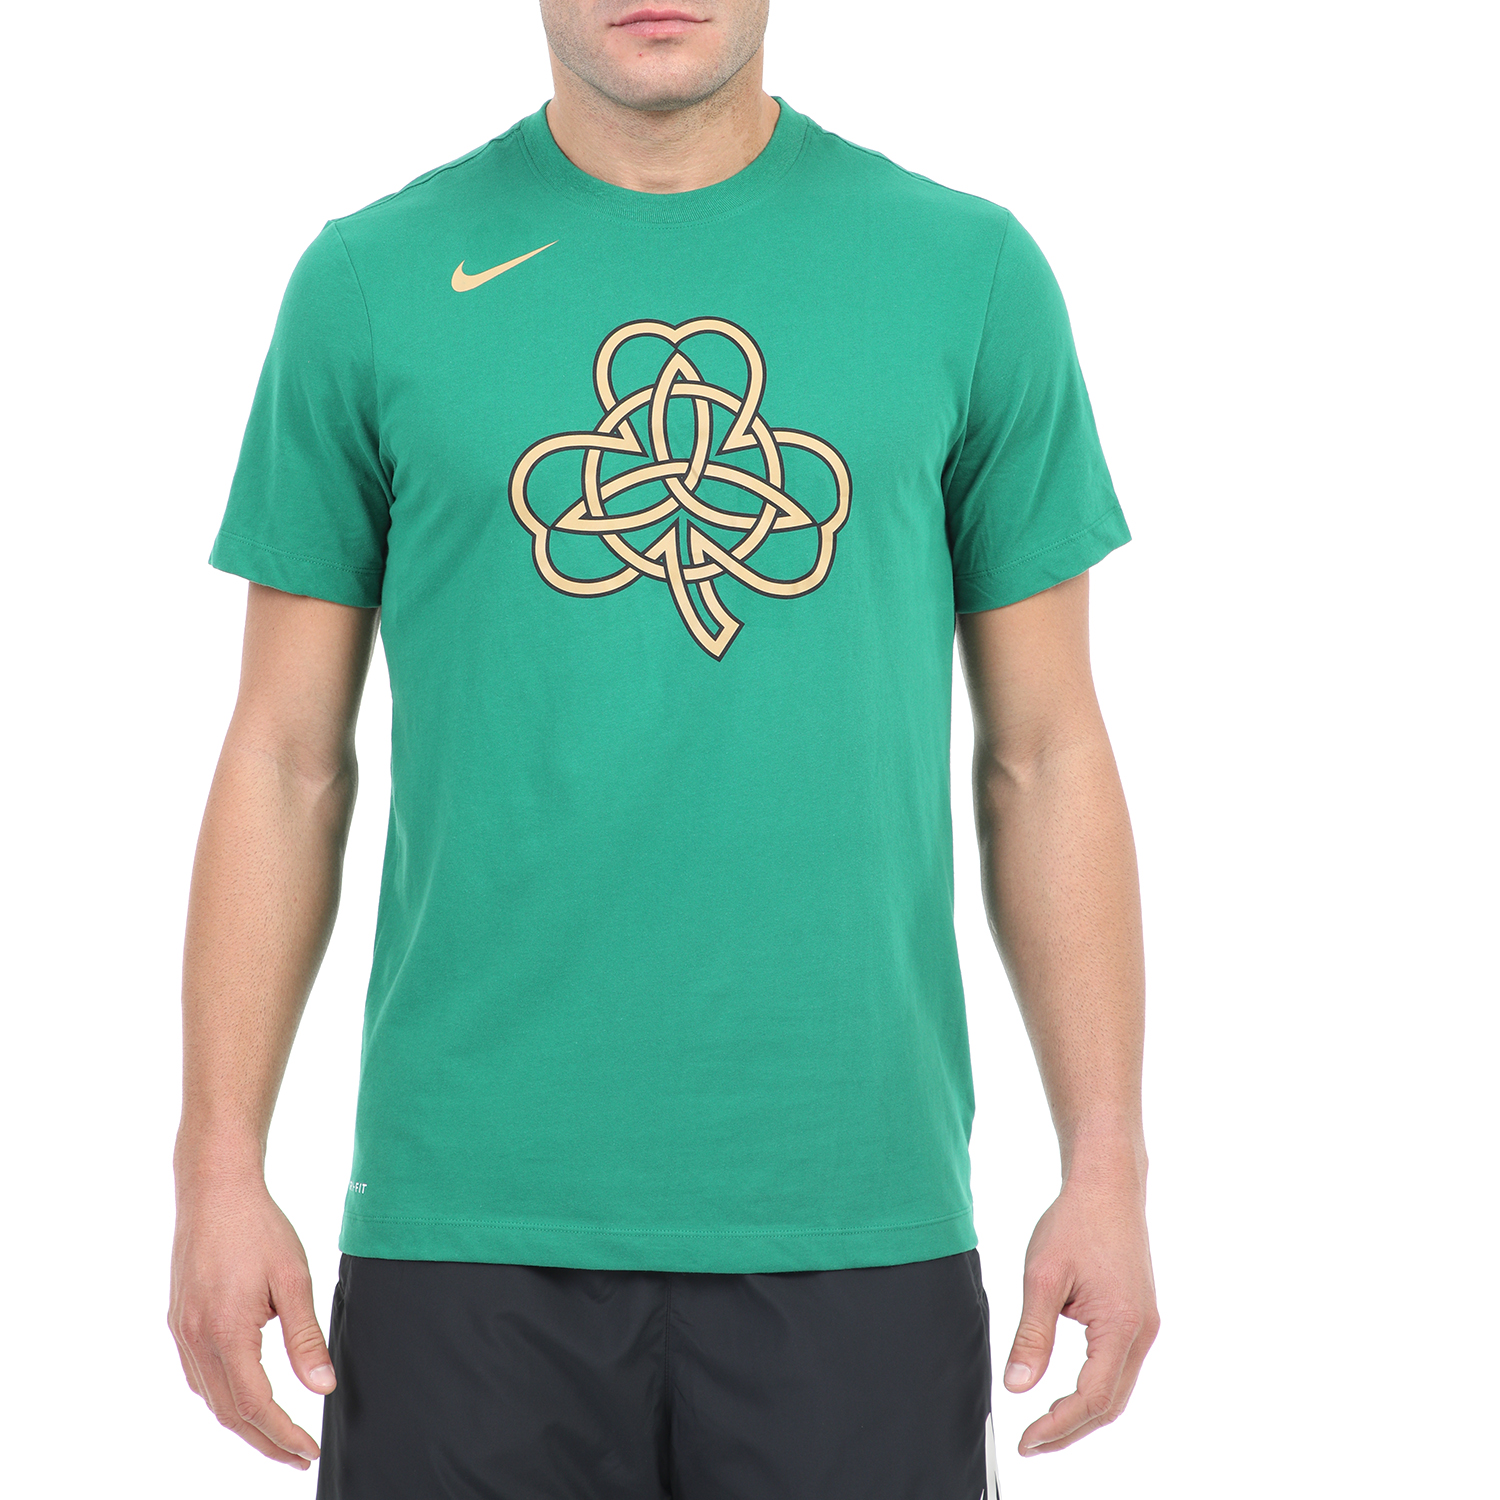 Ανδρικά/Ρούχα/Αθλητικά/T-shirt NIKE - Ανδρικό t-shirt NIKE DRY TEE FNW CE LGO πράσινο